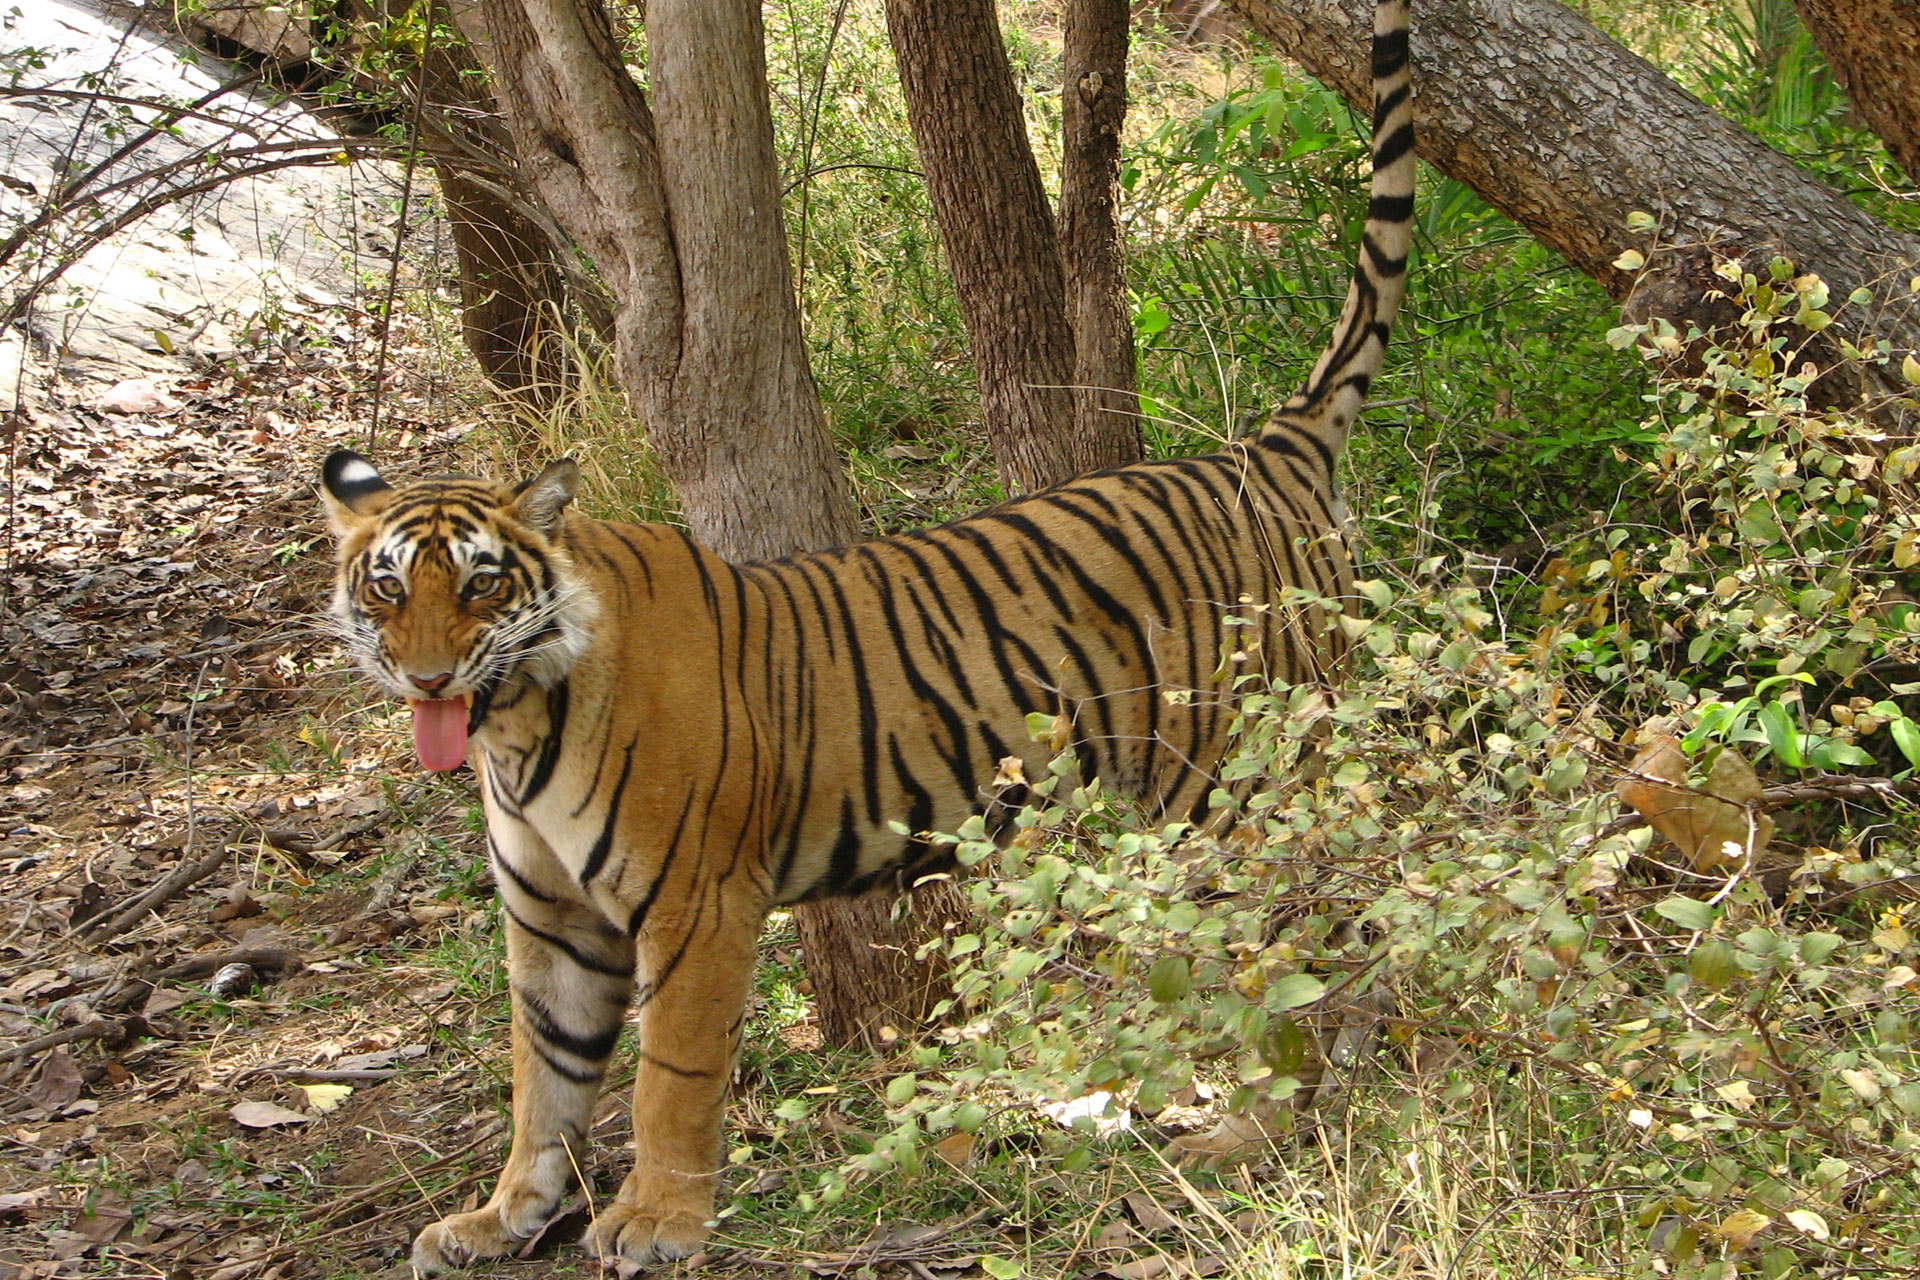 The Royal Begal Tiger, Ranthambhore, Rajasthan